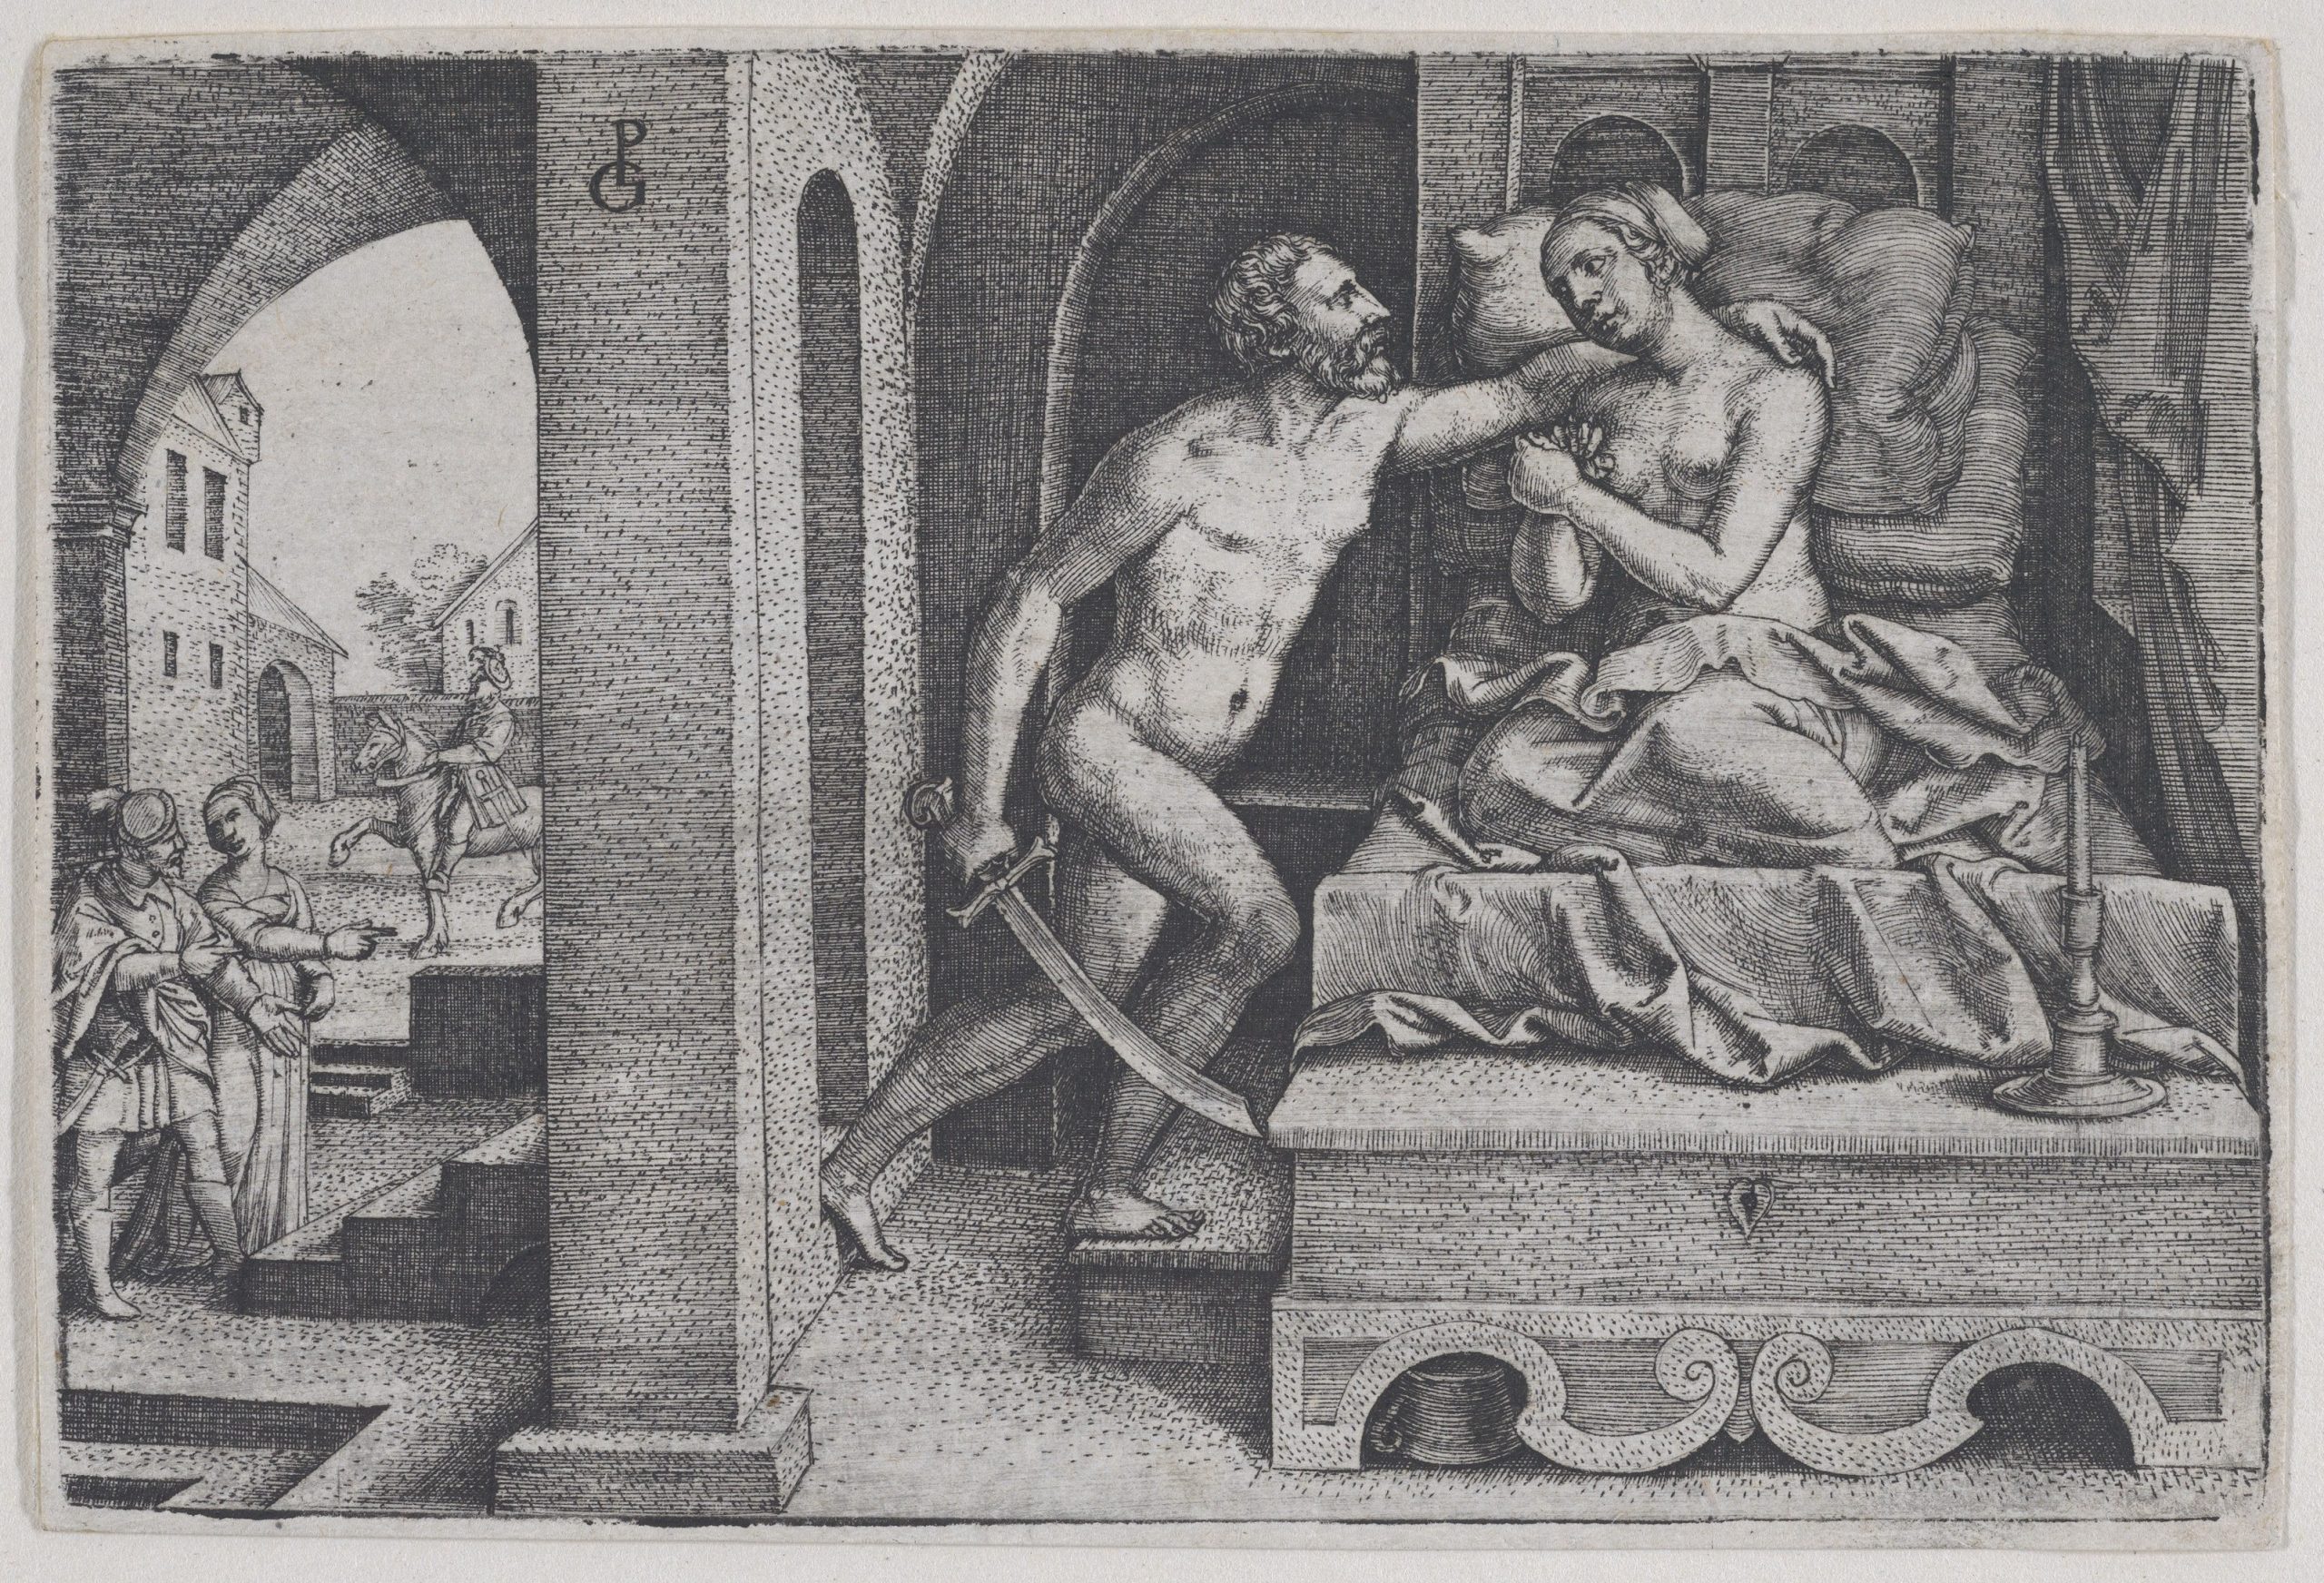 Tarquinius Rapes Lucretia, from Scenes from Roman History